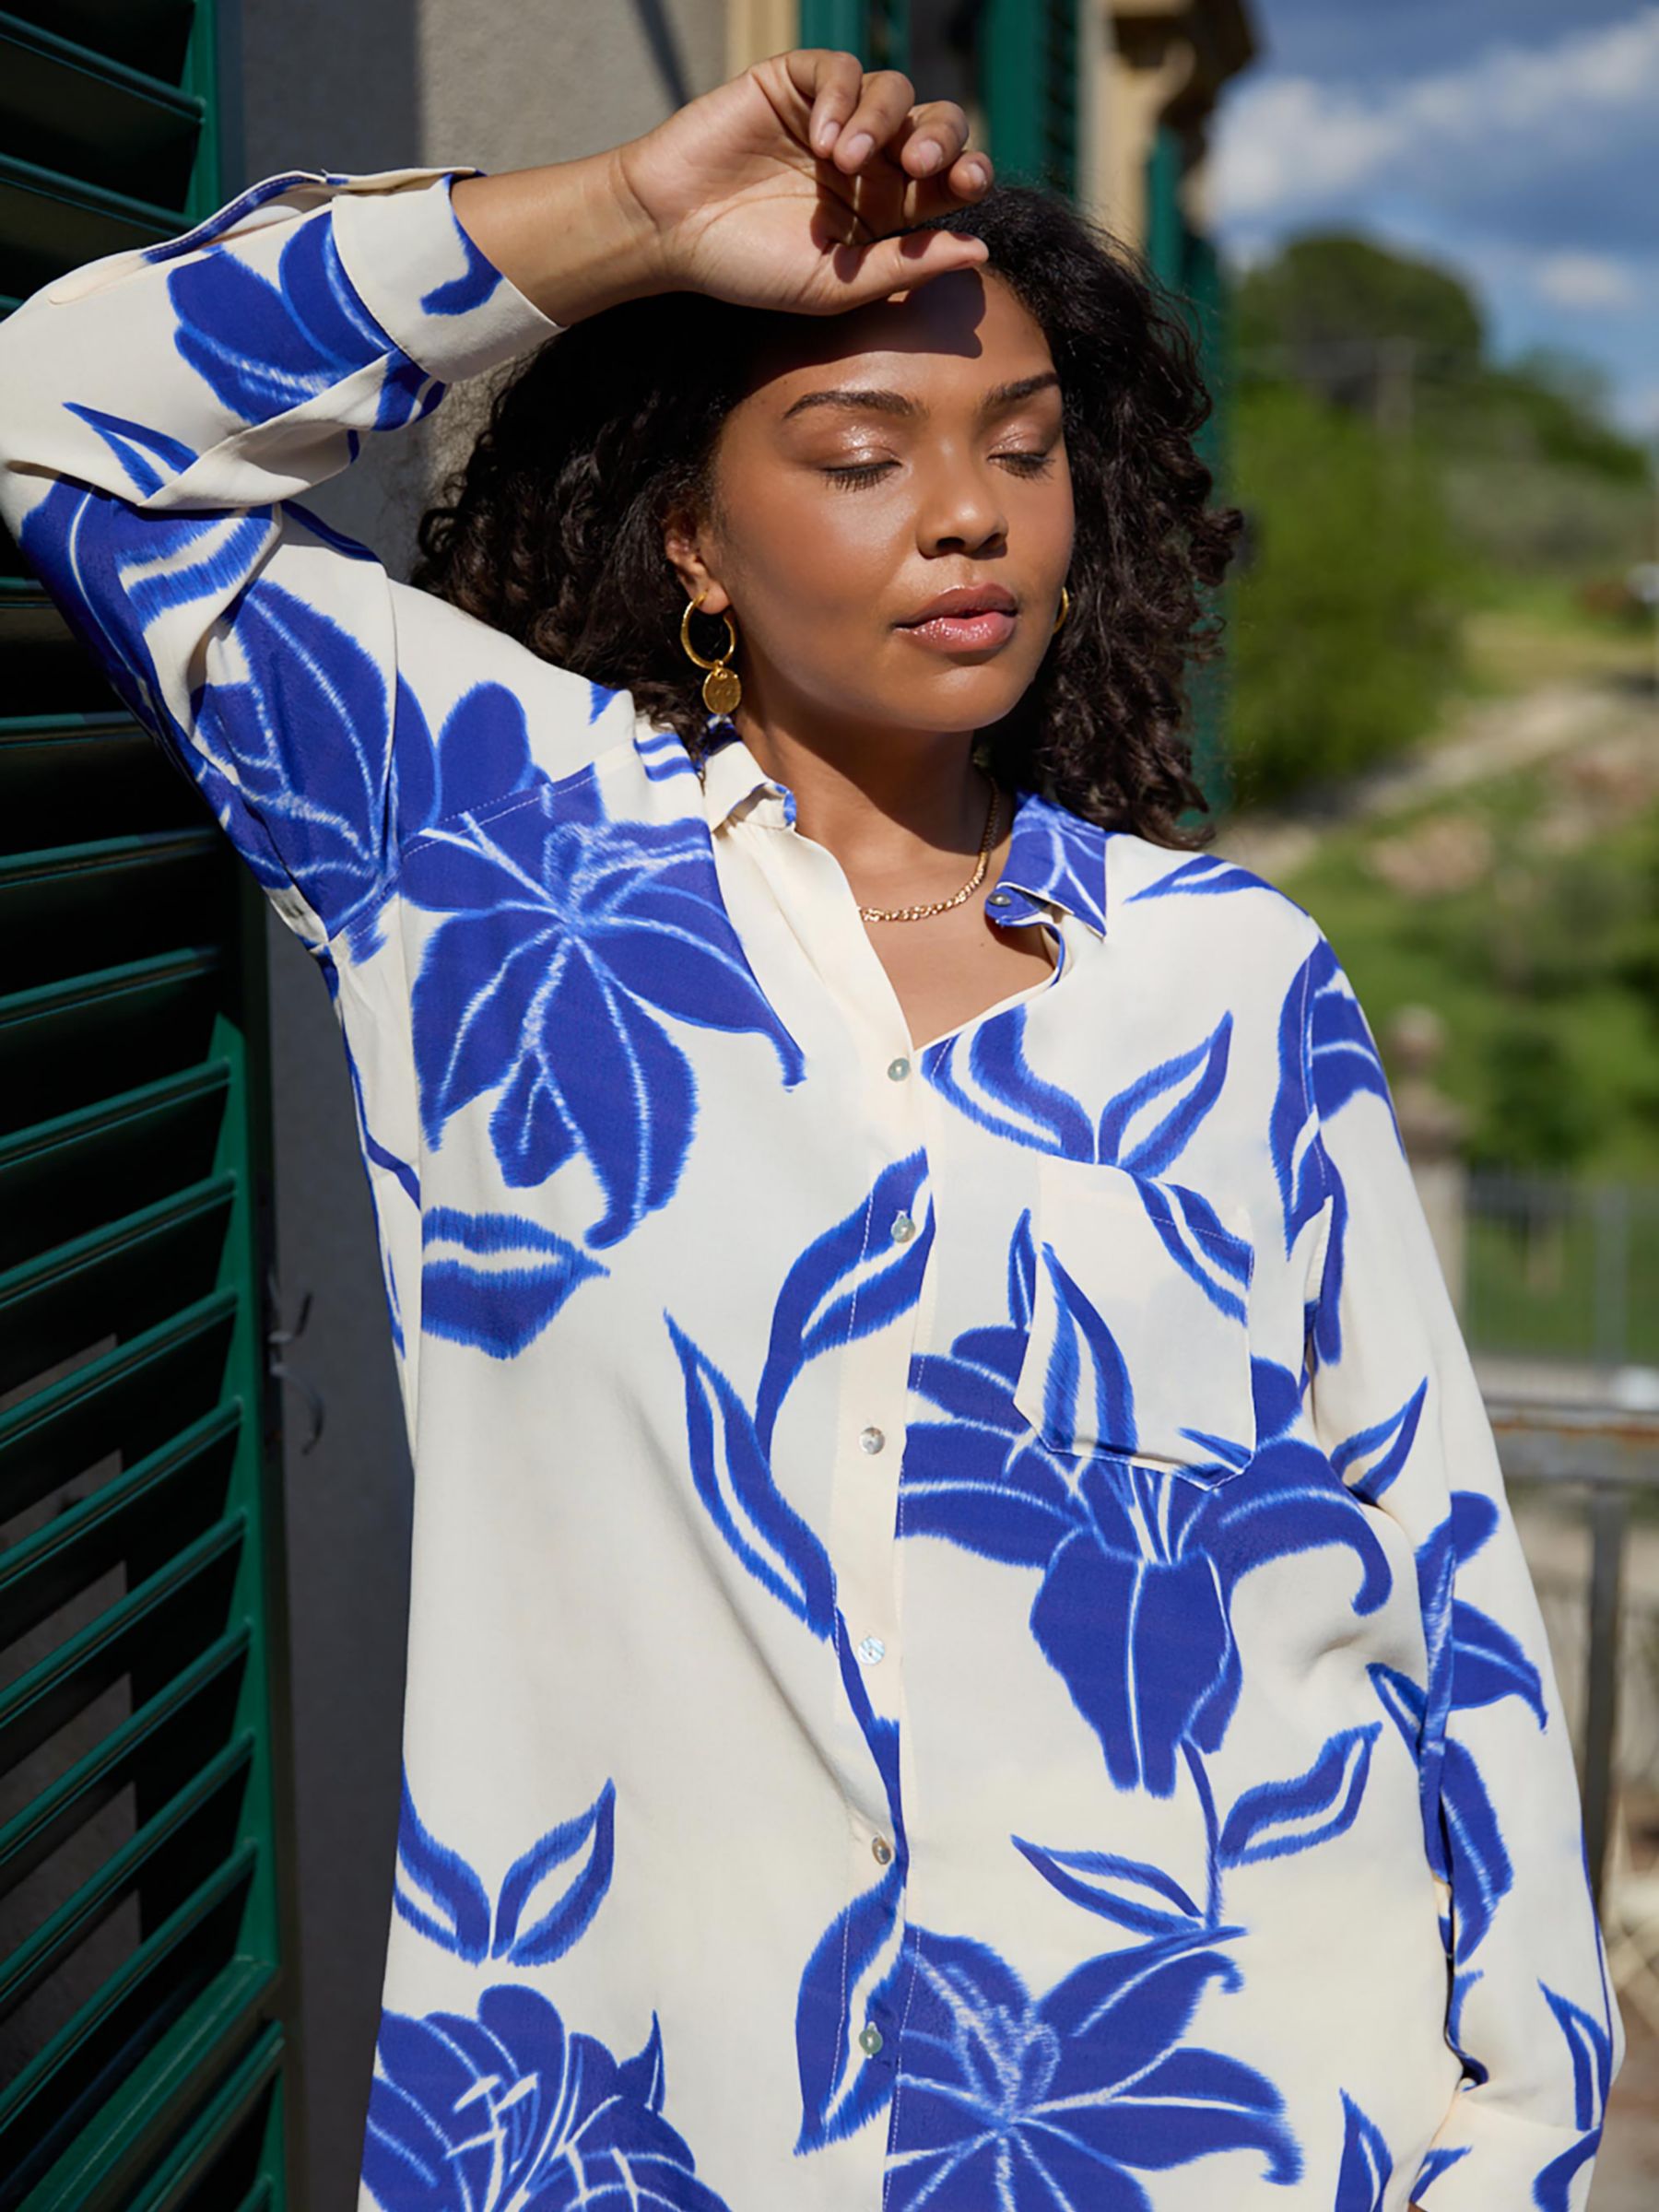 Buy Live Unlimited Curve Floral Print Resort Shirt, Blue Online at johnlewis.com